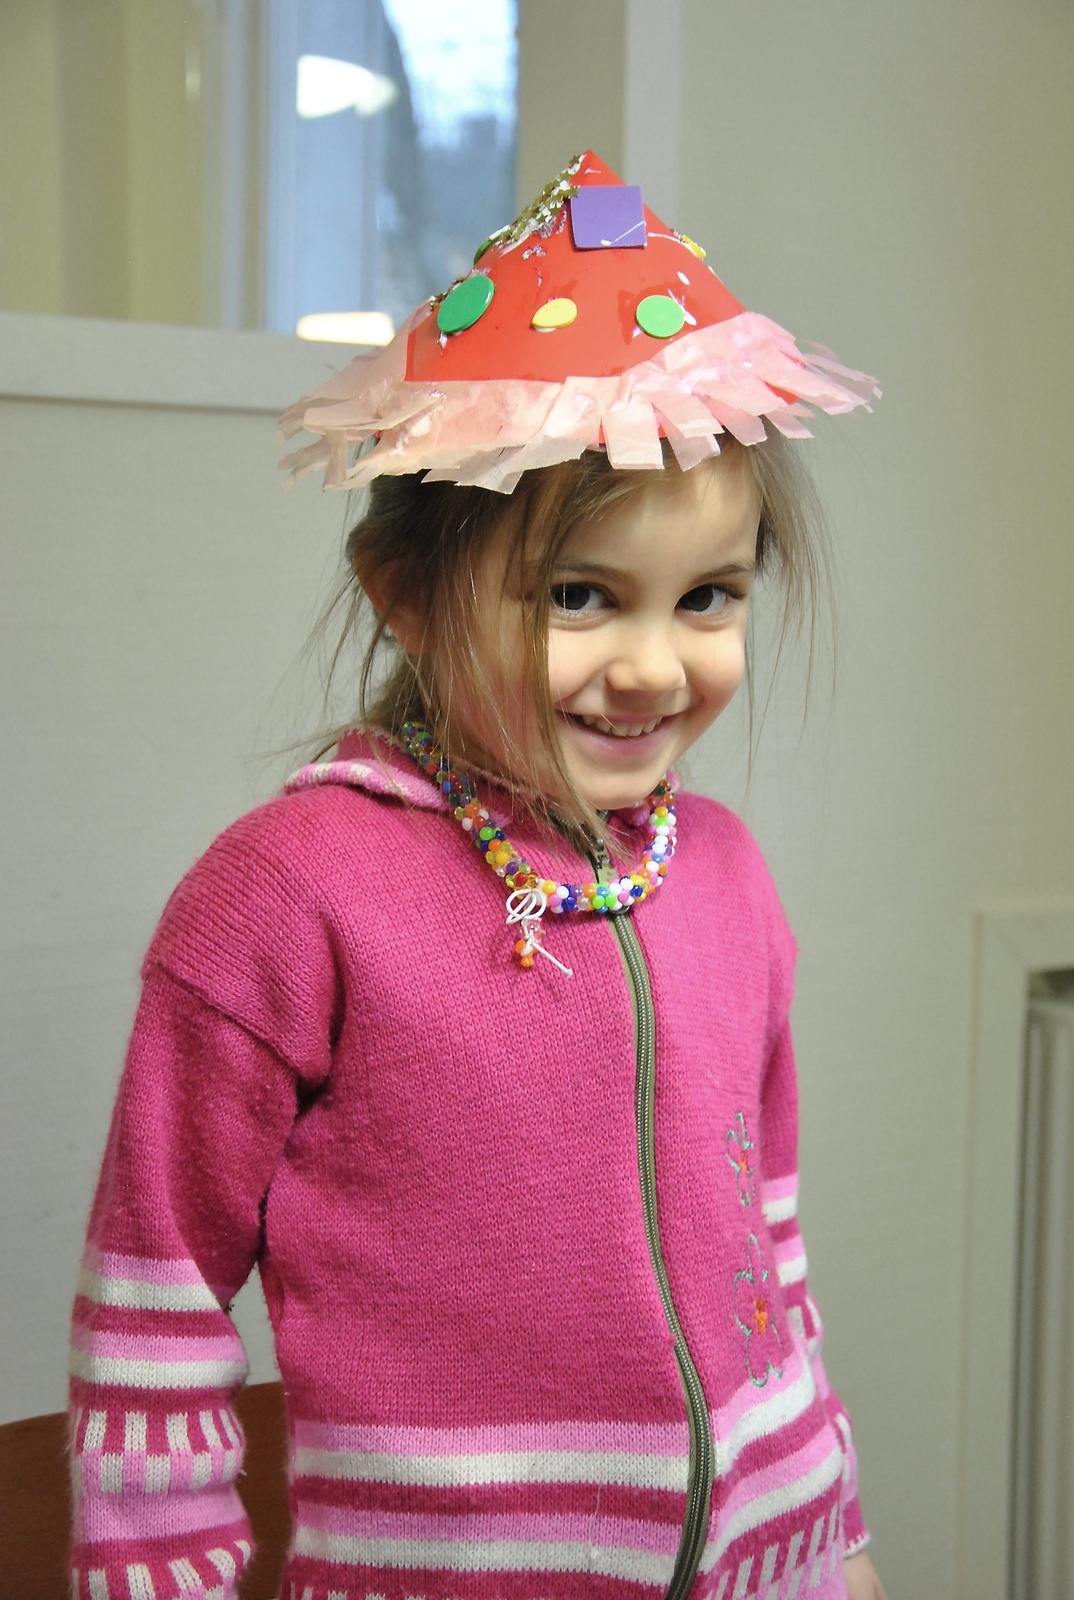 Vem vet, kanske blir Karis Kawar hattmakare när hon blir stor? Hon lyckades i alla fall bra med sin partyhatt. 
Foto: Marie Strömberg Andersson